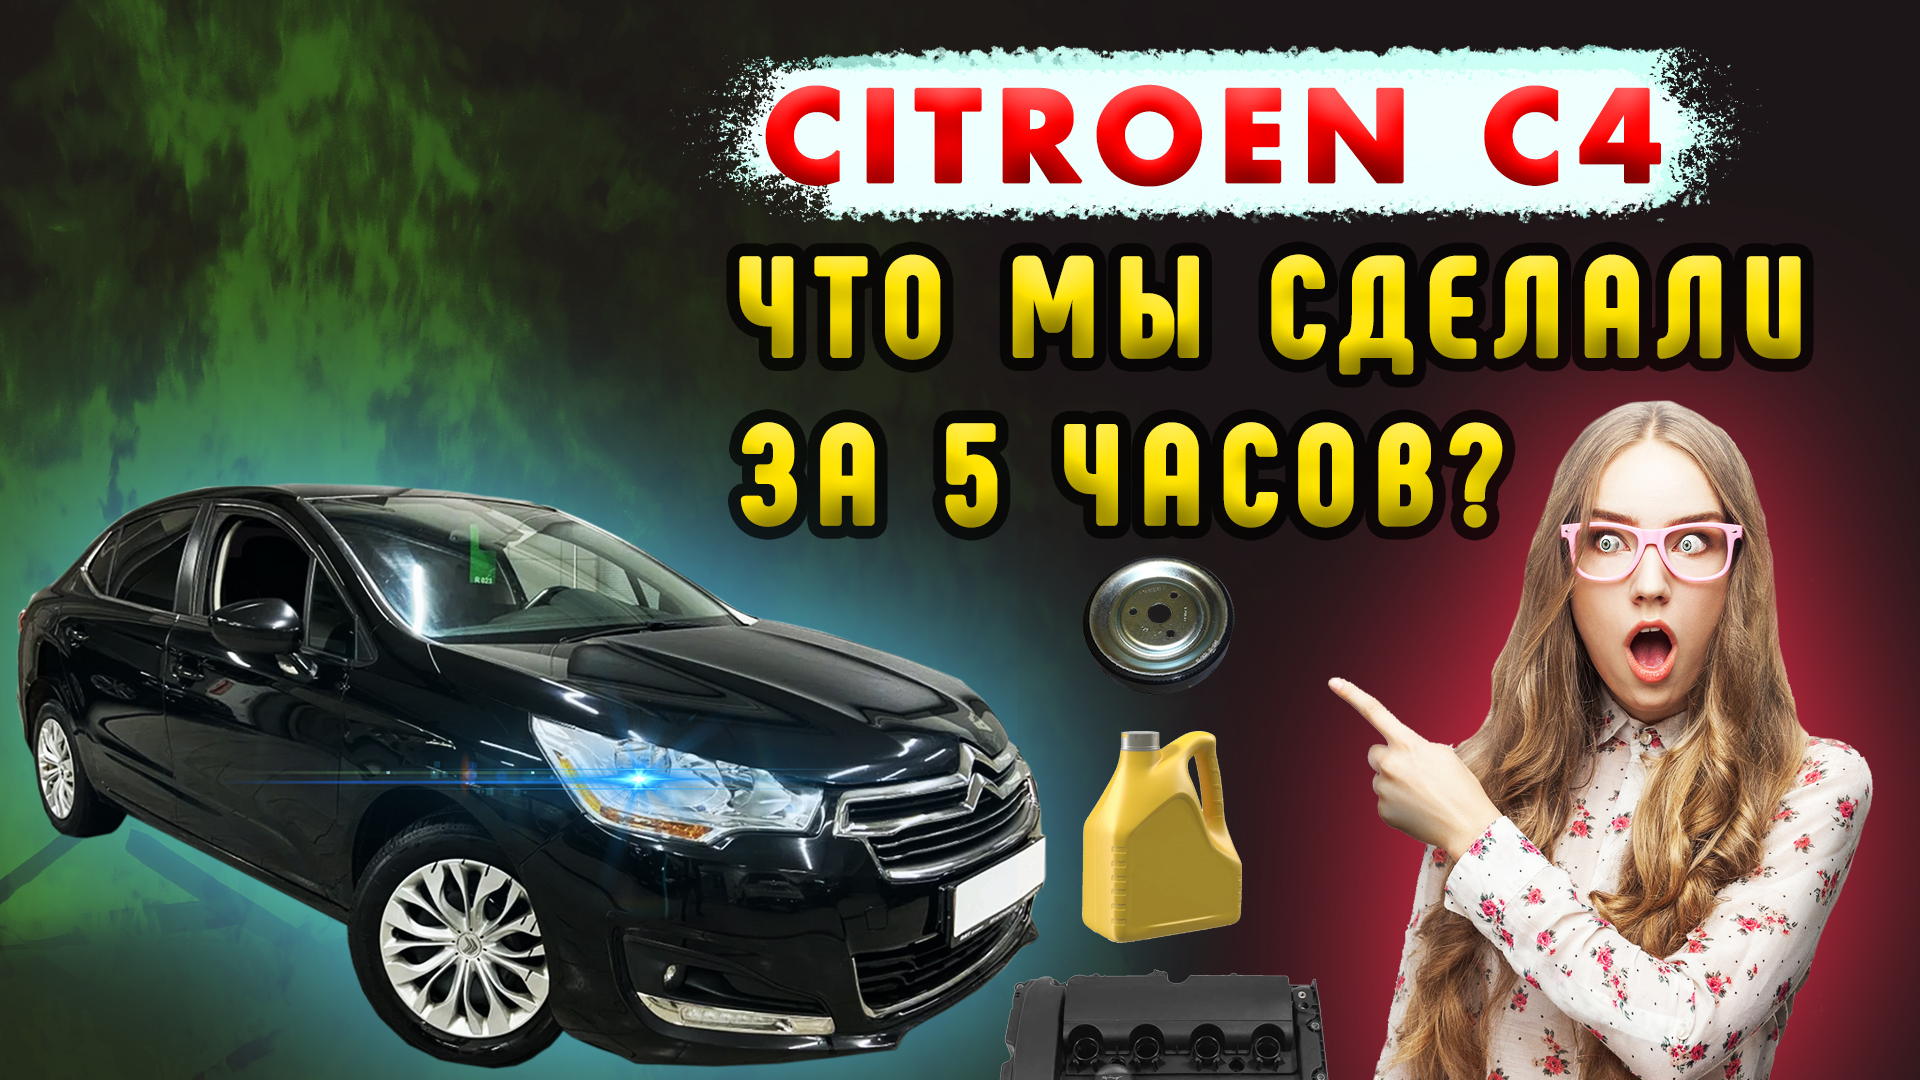 Citroen C4 (1G) Червона Йолка | ук-пересвет.рф - Українська спільнота водіїв та автомобілів.